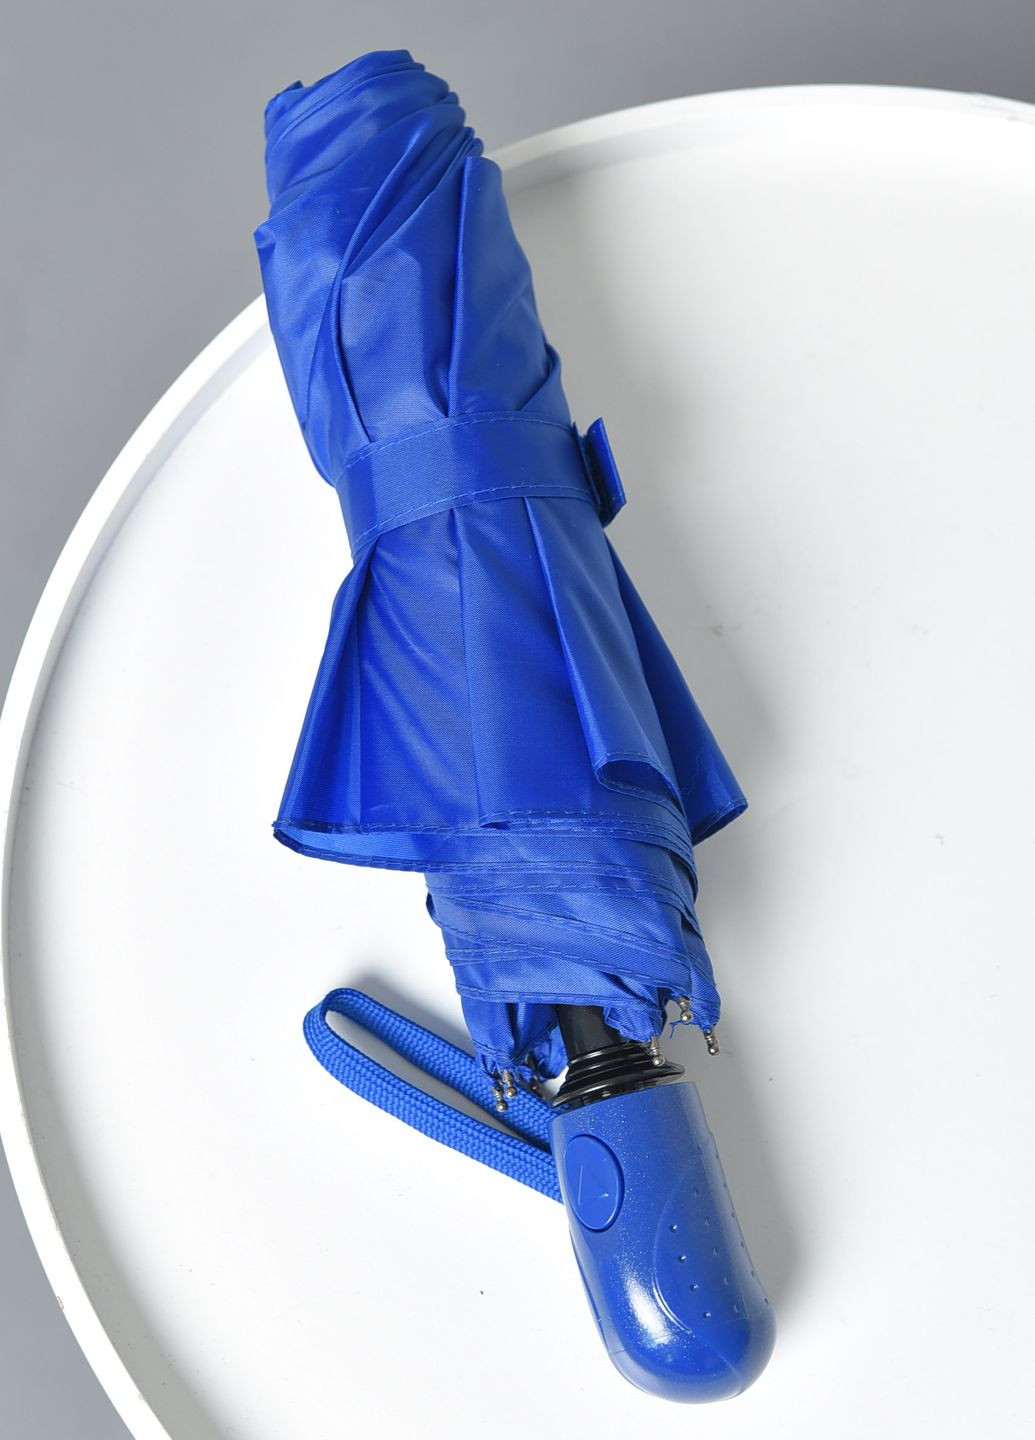 Зонт полуавтомат синего цвета Let's Shop (269387453)